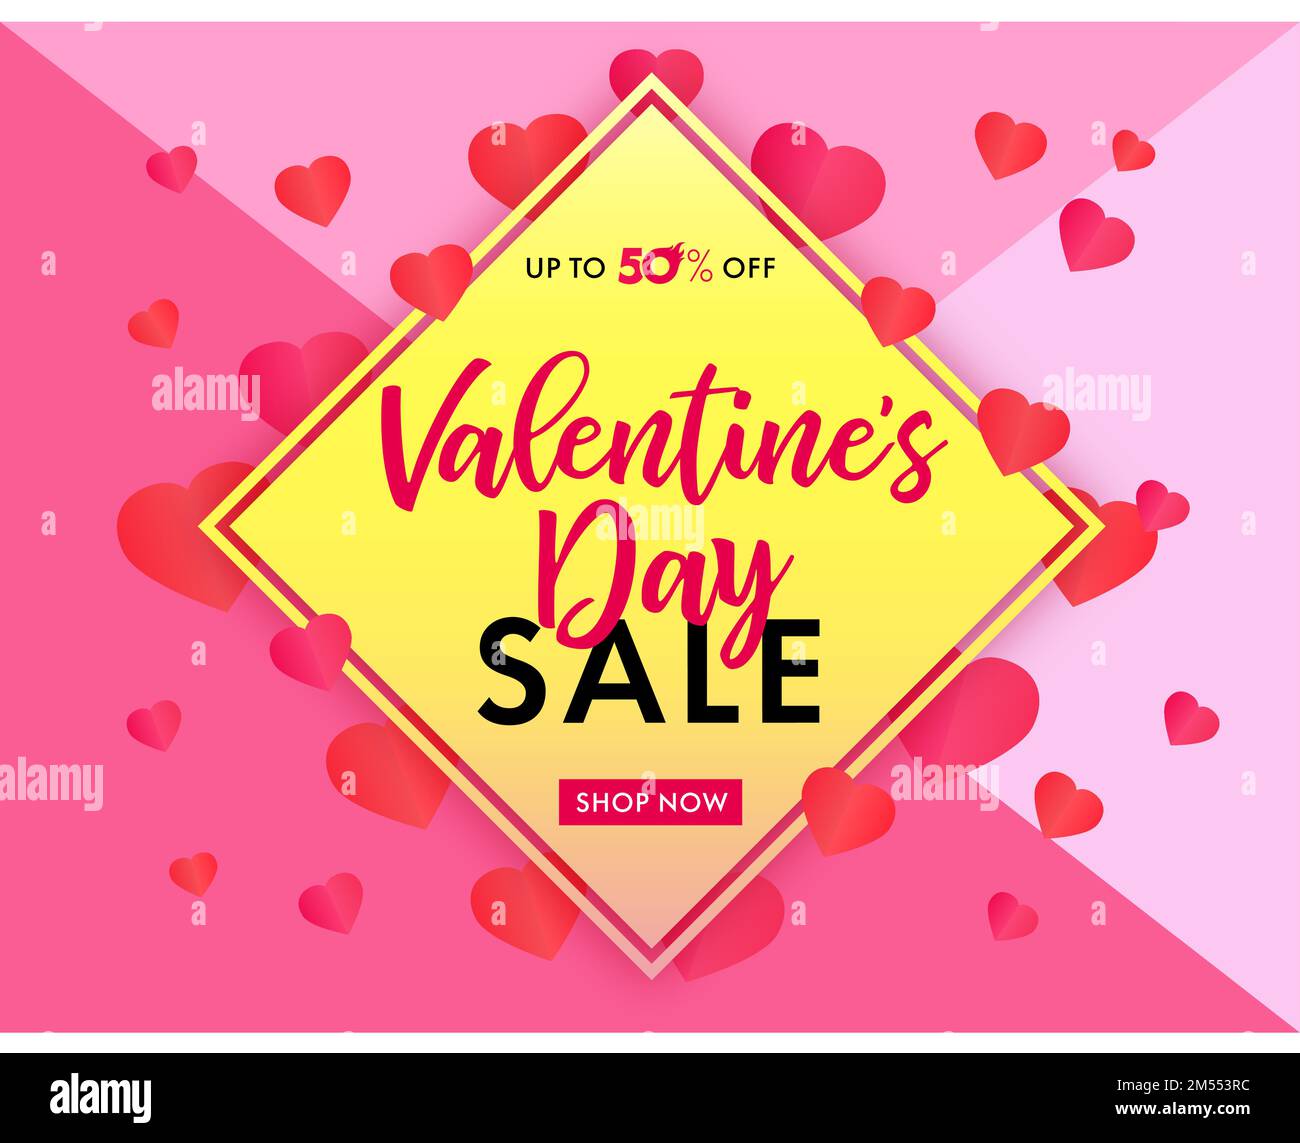 Banner oder Poster zum Valentinstag. Kreatives Tag. Werbedesign für Sonderangebote. Grafikvorlage für Werbung. Stock Vektor